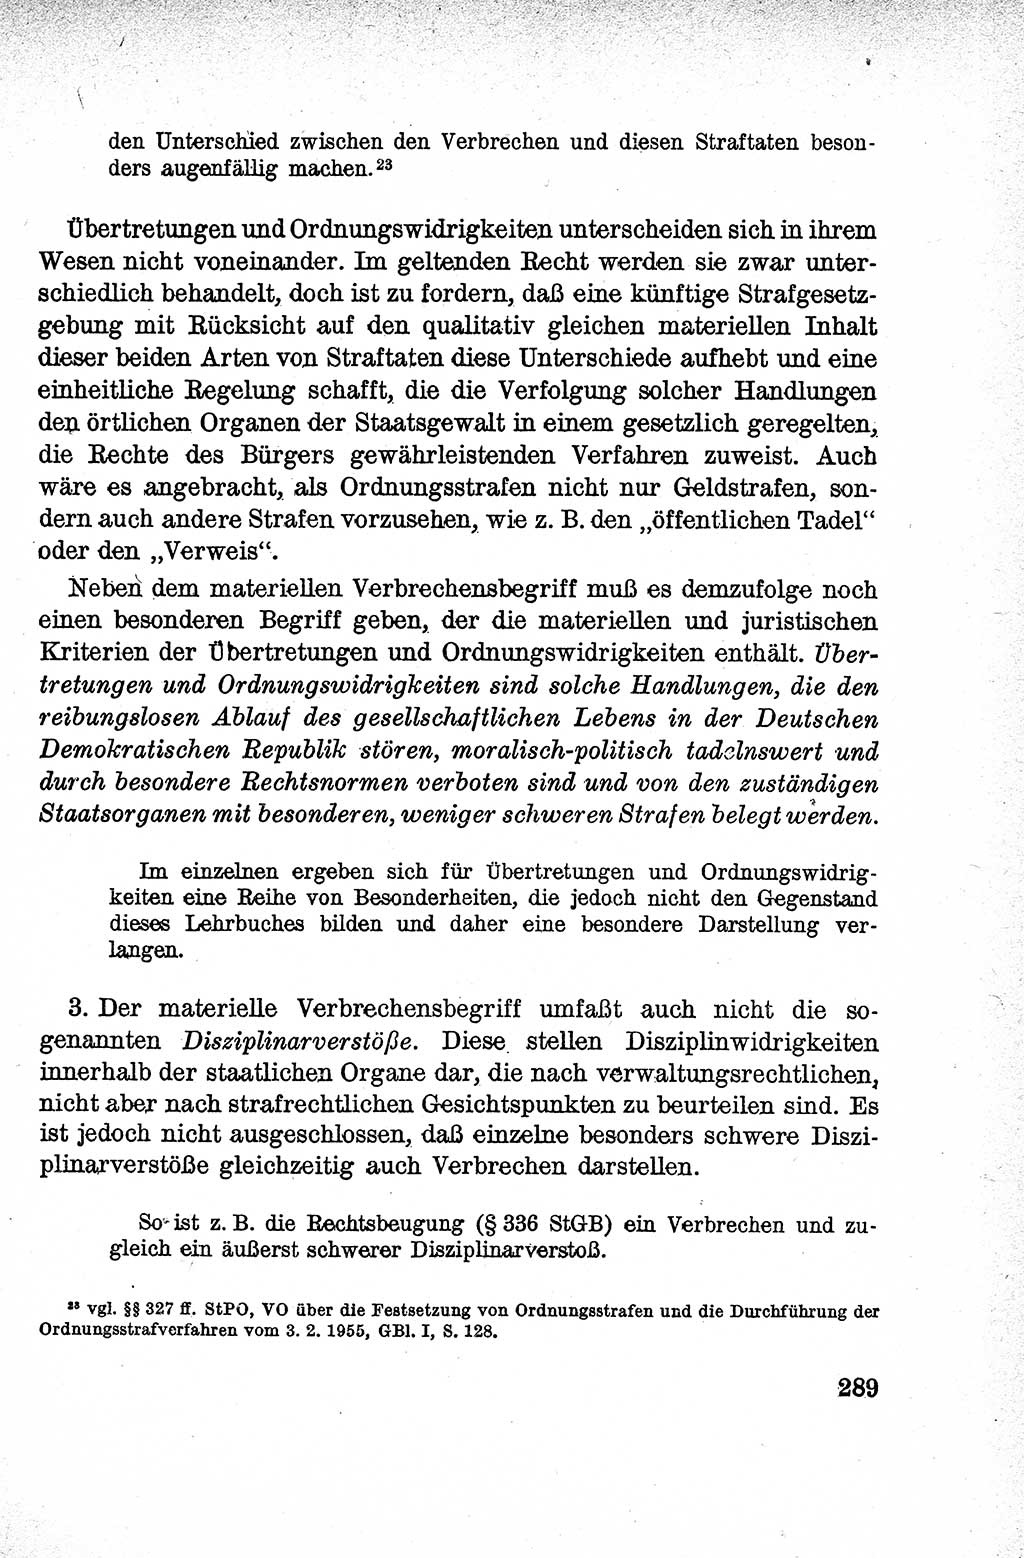 Lehrbuch des Strafrechts der Deutschen Demokratischen Republik (DDR), Allgemeiner Teil 1959, Seite 289 (Lb. Strafr. DDR AT 1959, S. 289)